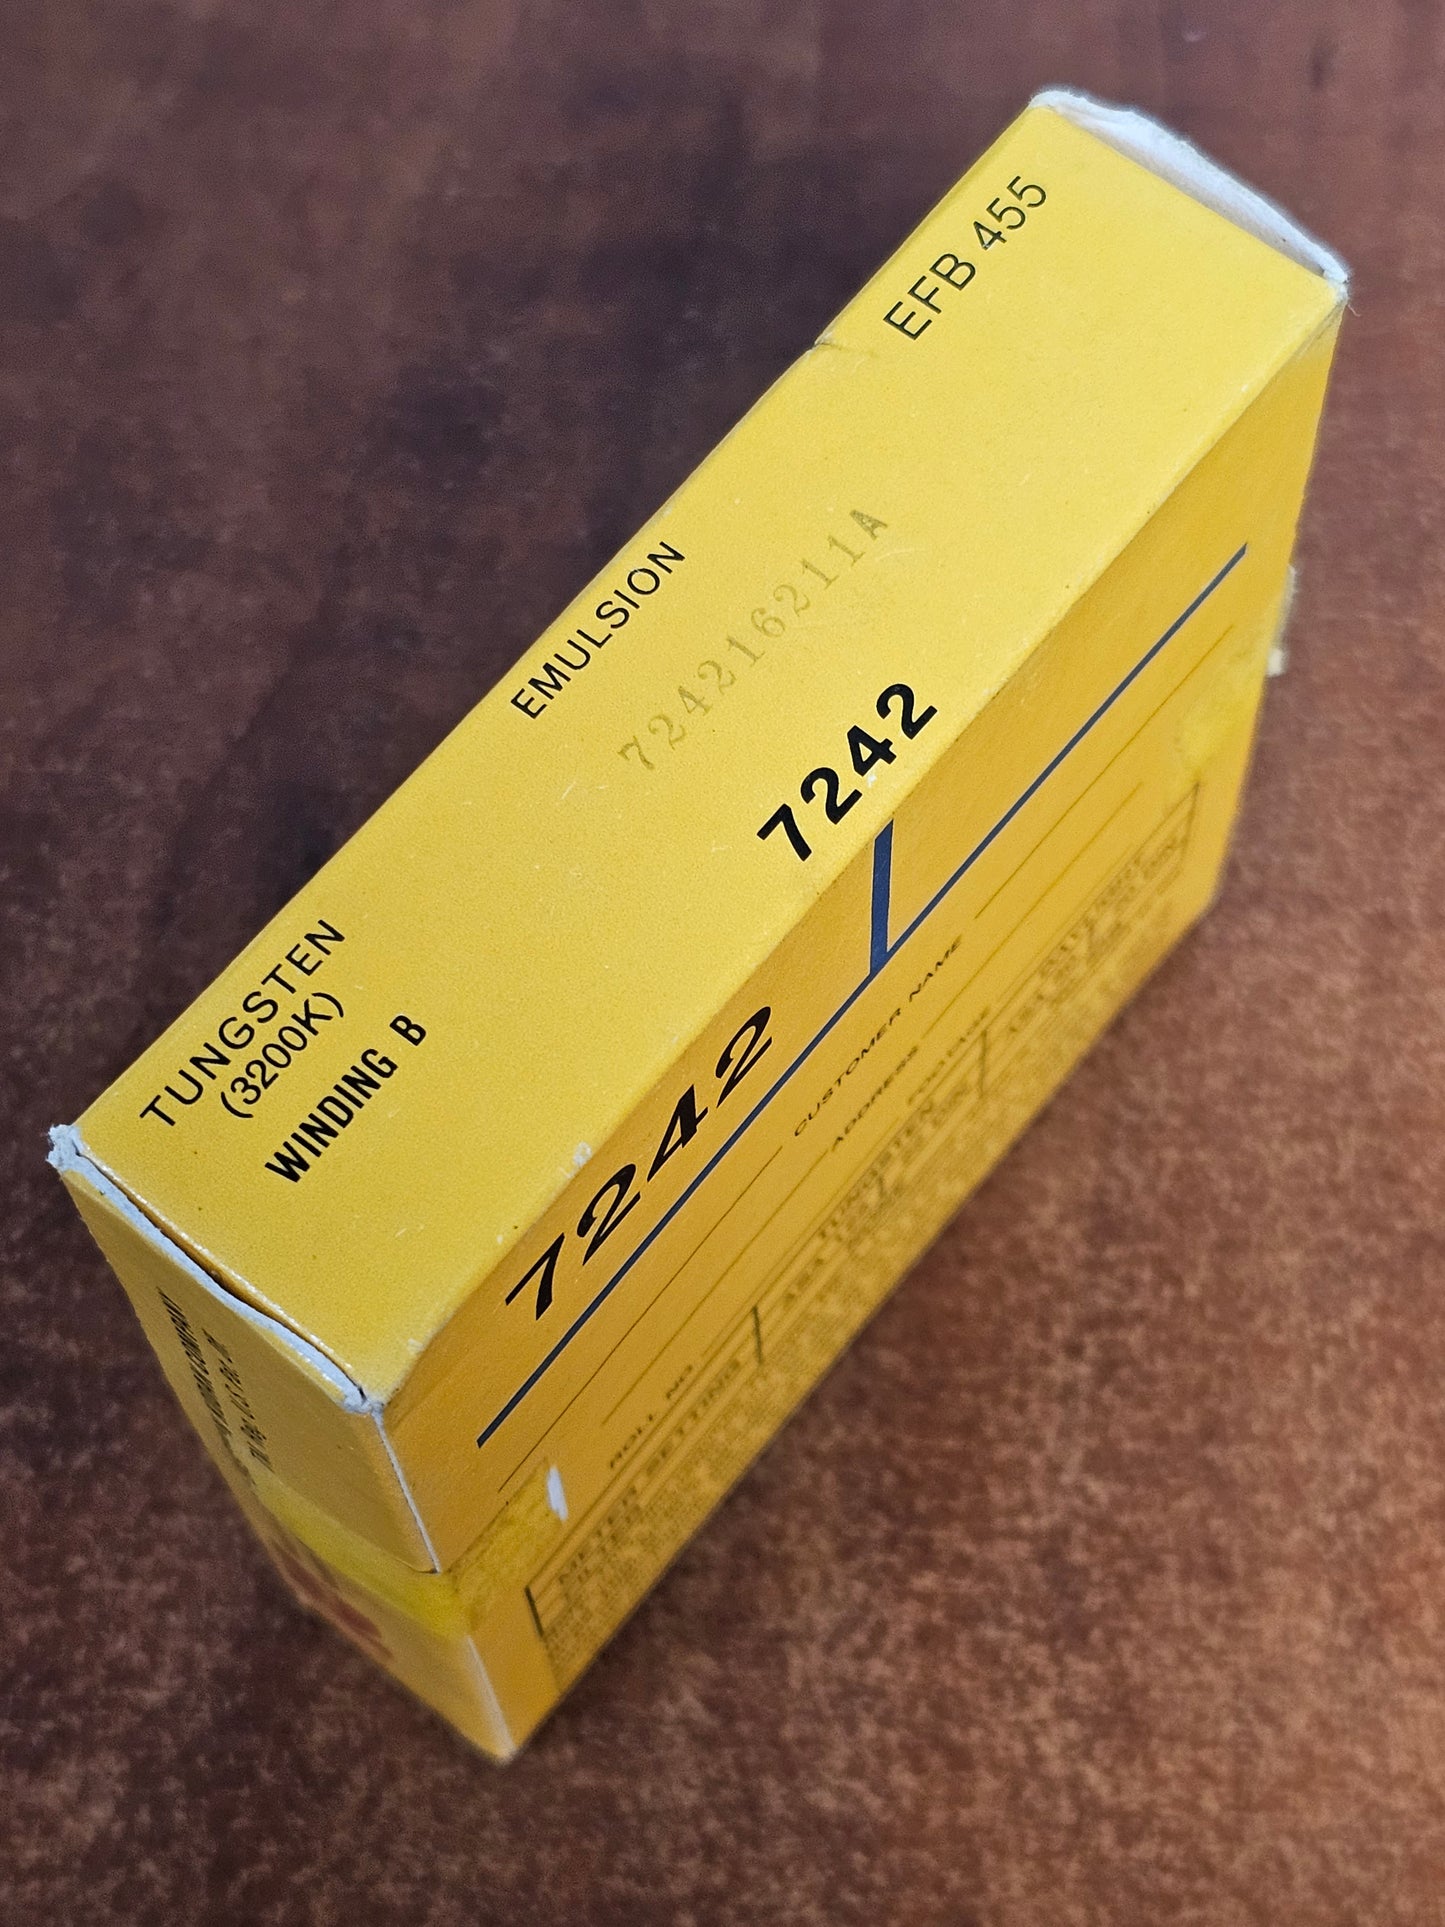 KODAK 7242 Ektachrome EF 16mm 100' Color Reversal Film ( Expired Stock )